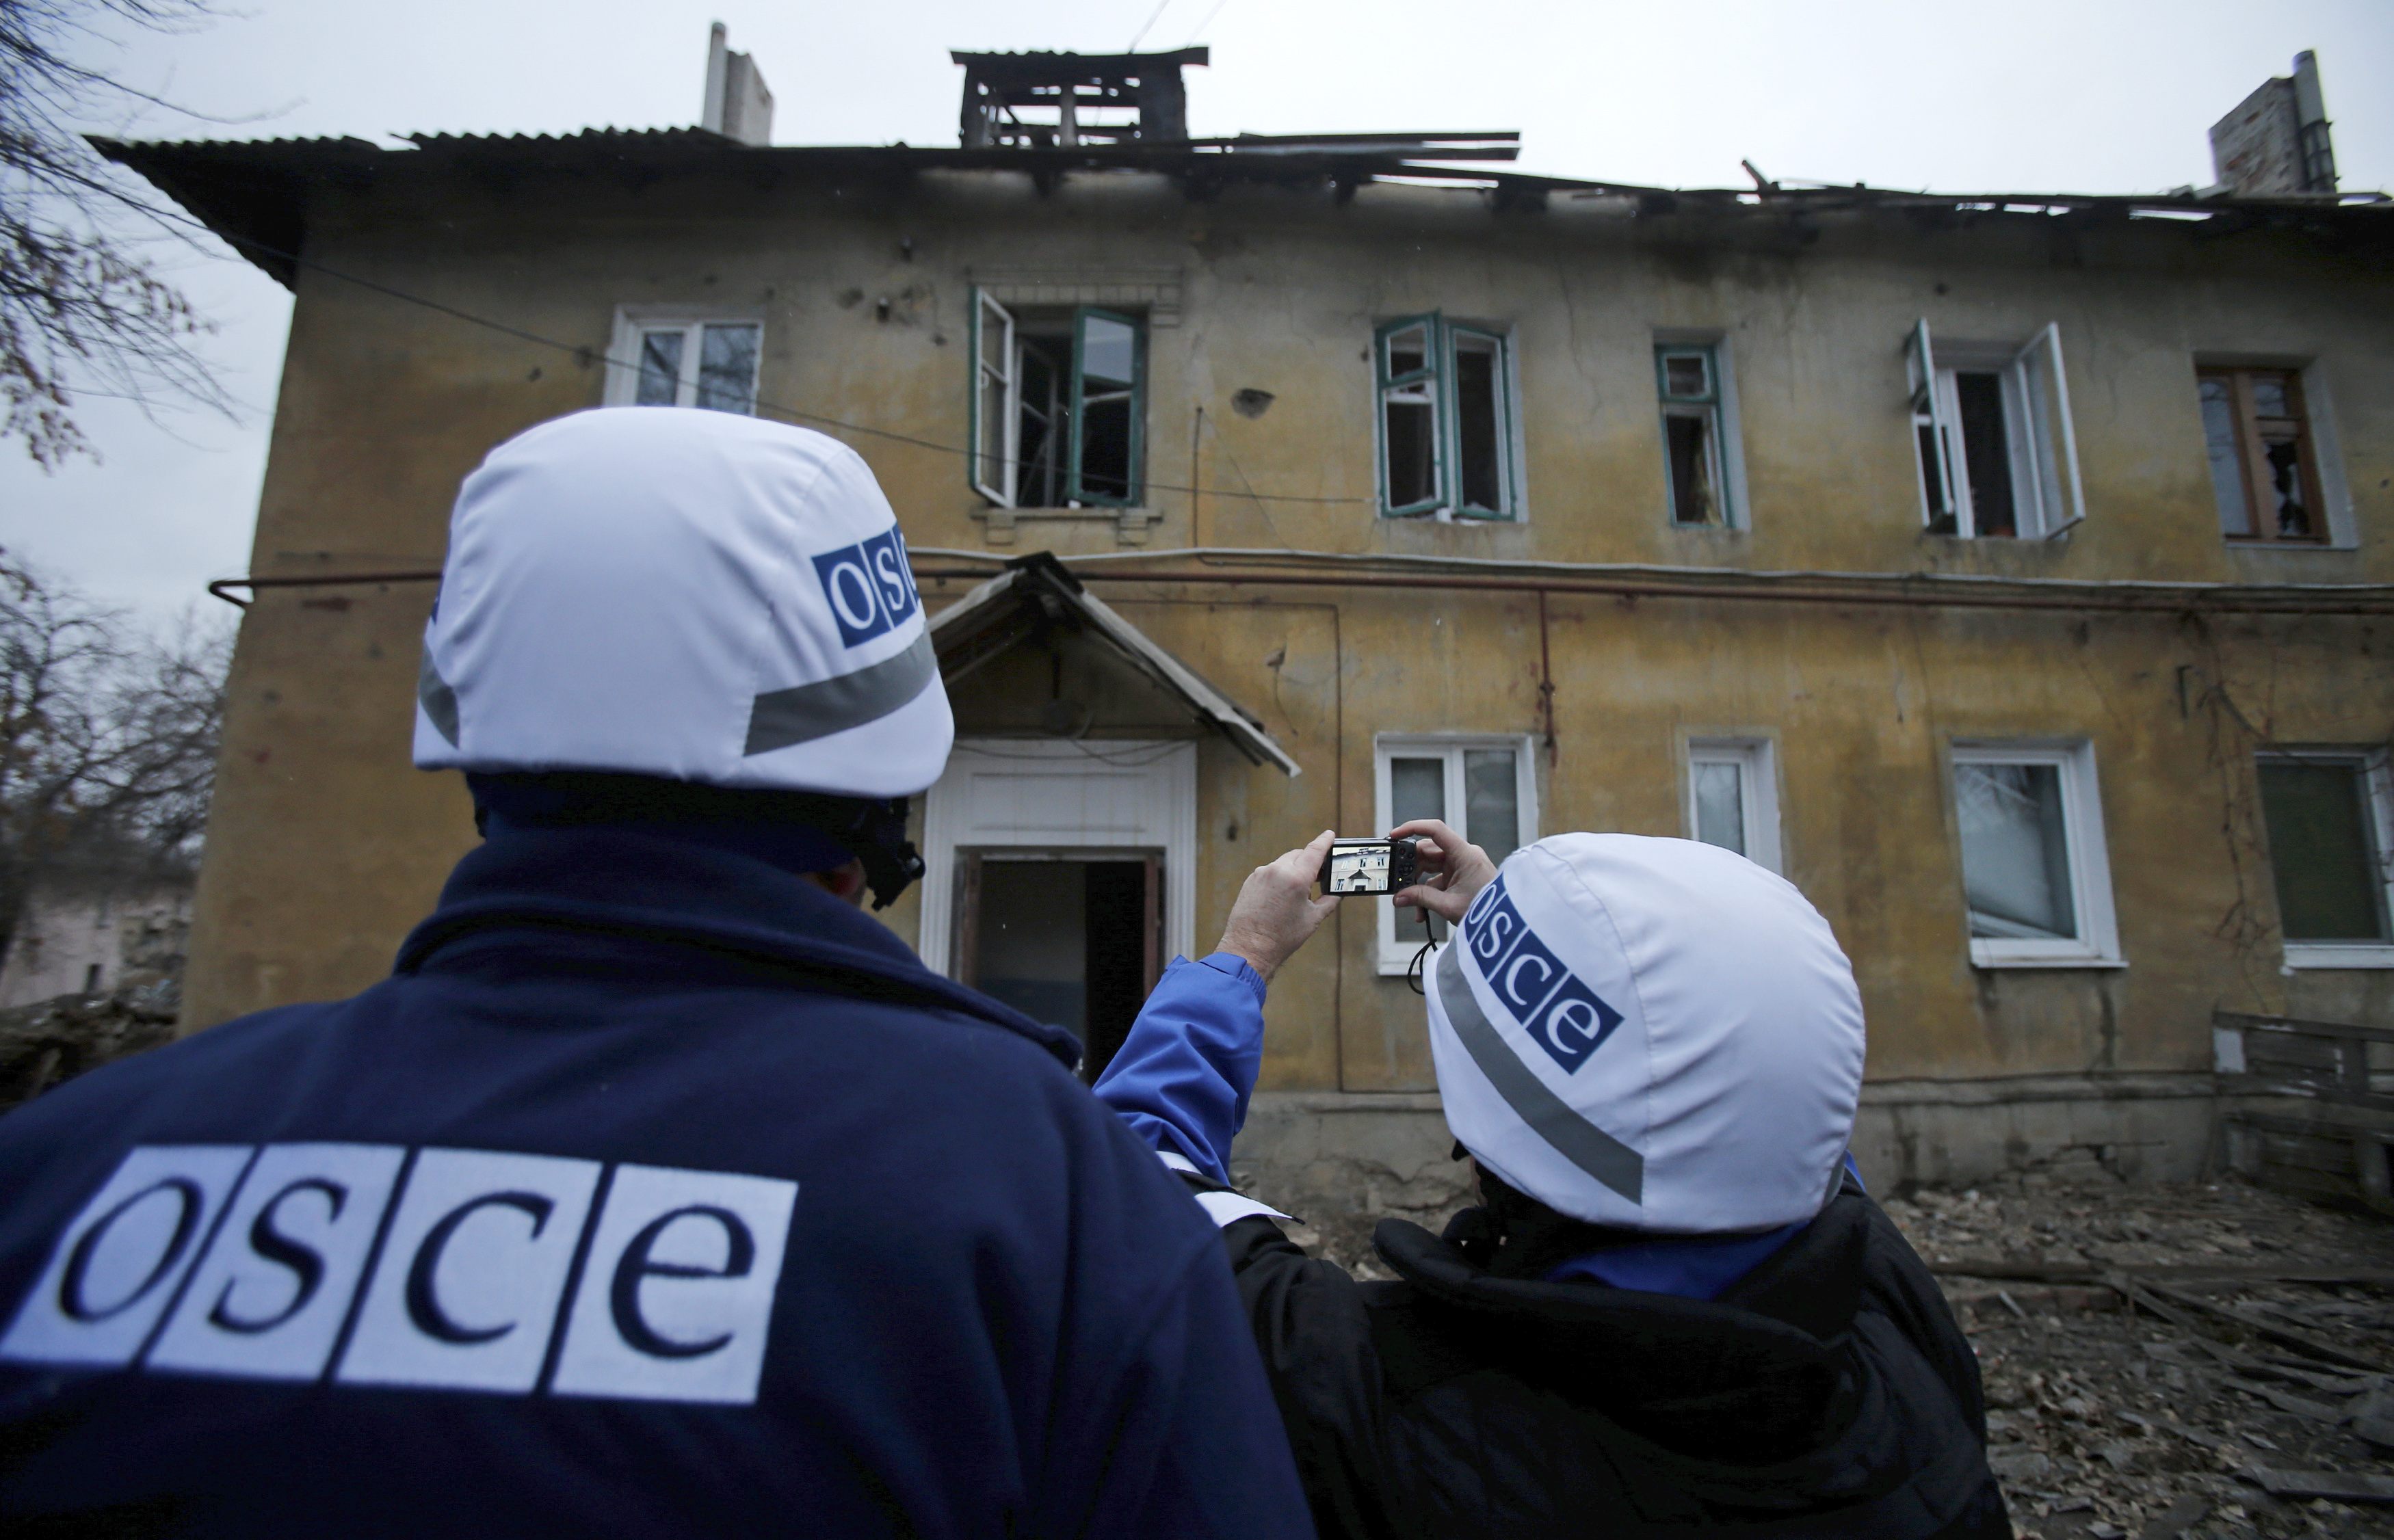 Члены специальной мониторинговой миссии ОБСЕ заявили о присутствии третьей стороны на территории Донбасса.
